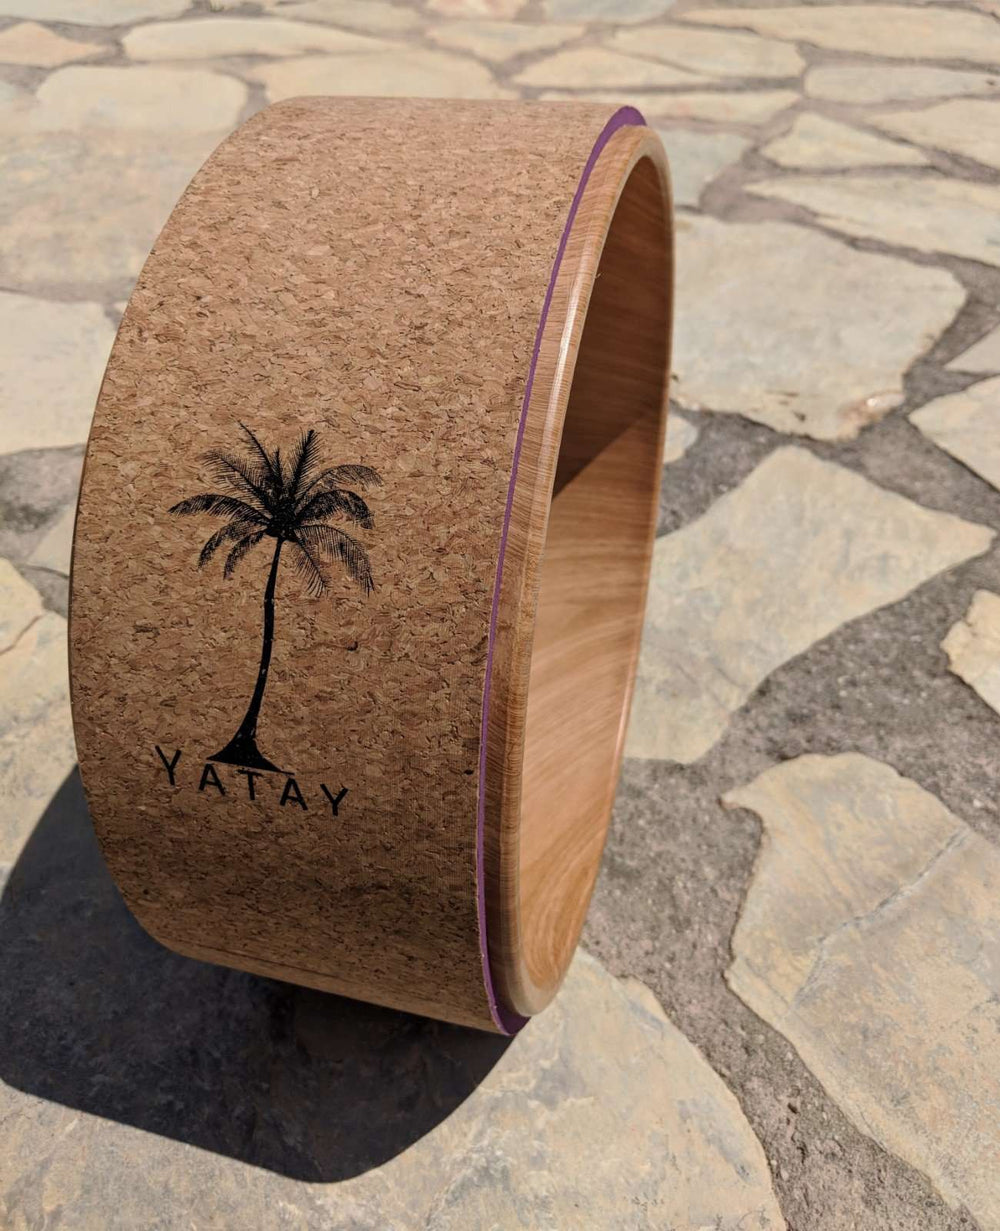 Cork Yoga Wheel | Made with 100% Natural Materials | Yatay